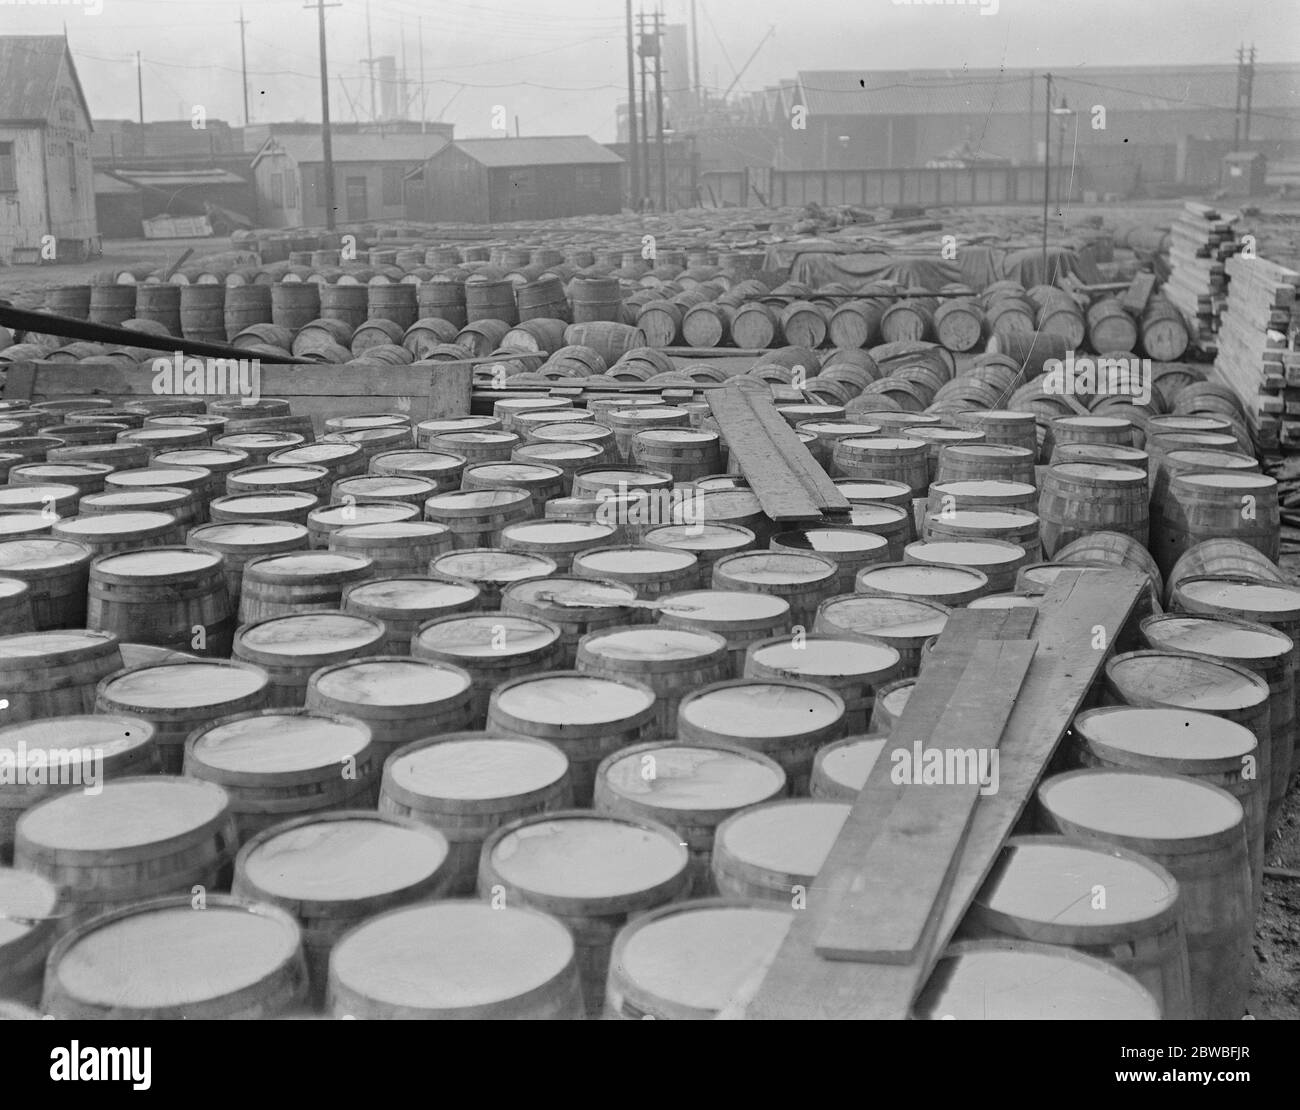 5 , 000 barils de sirop retenus aux docks de Surrey il est allégué que 5 , 000 barils de sirop doré arrivés il y a 2 ans ne sont toujours pas déplacés le 21 avril 1920 Banque D'Images